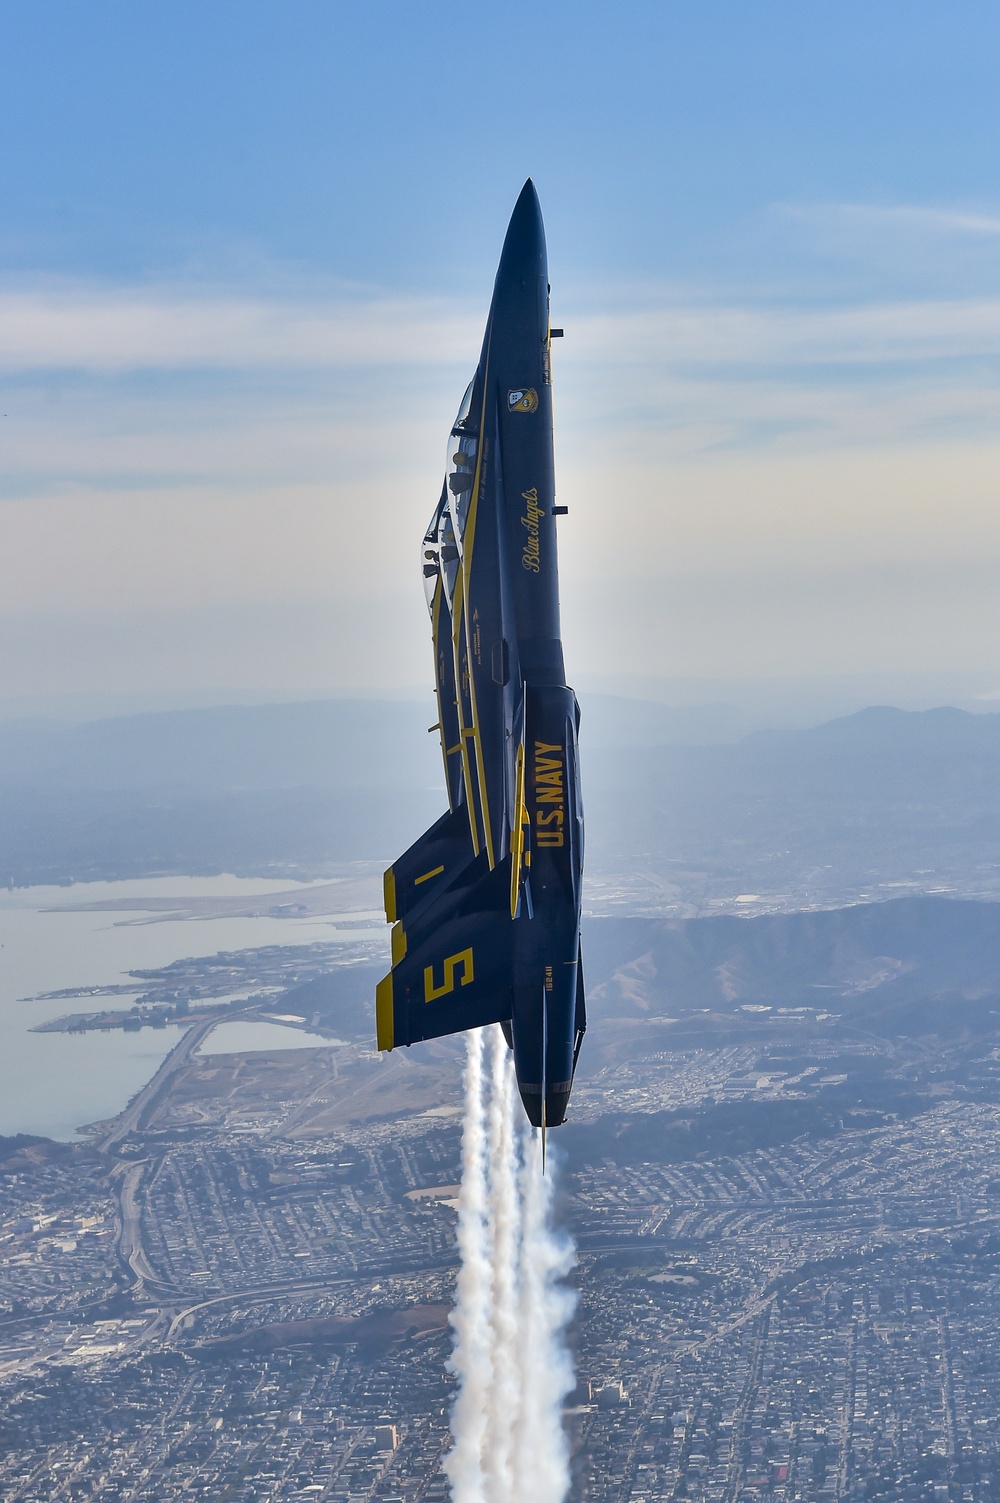 DVIDS Images Blue Angels Soar Over Fleet Week San Francisco [Image